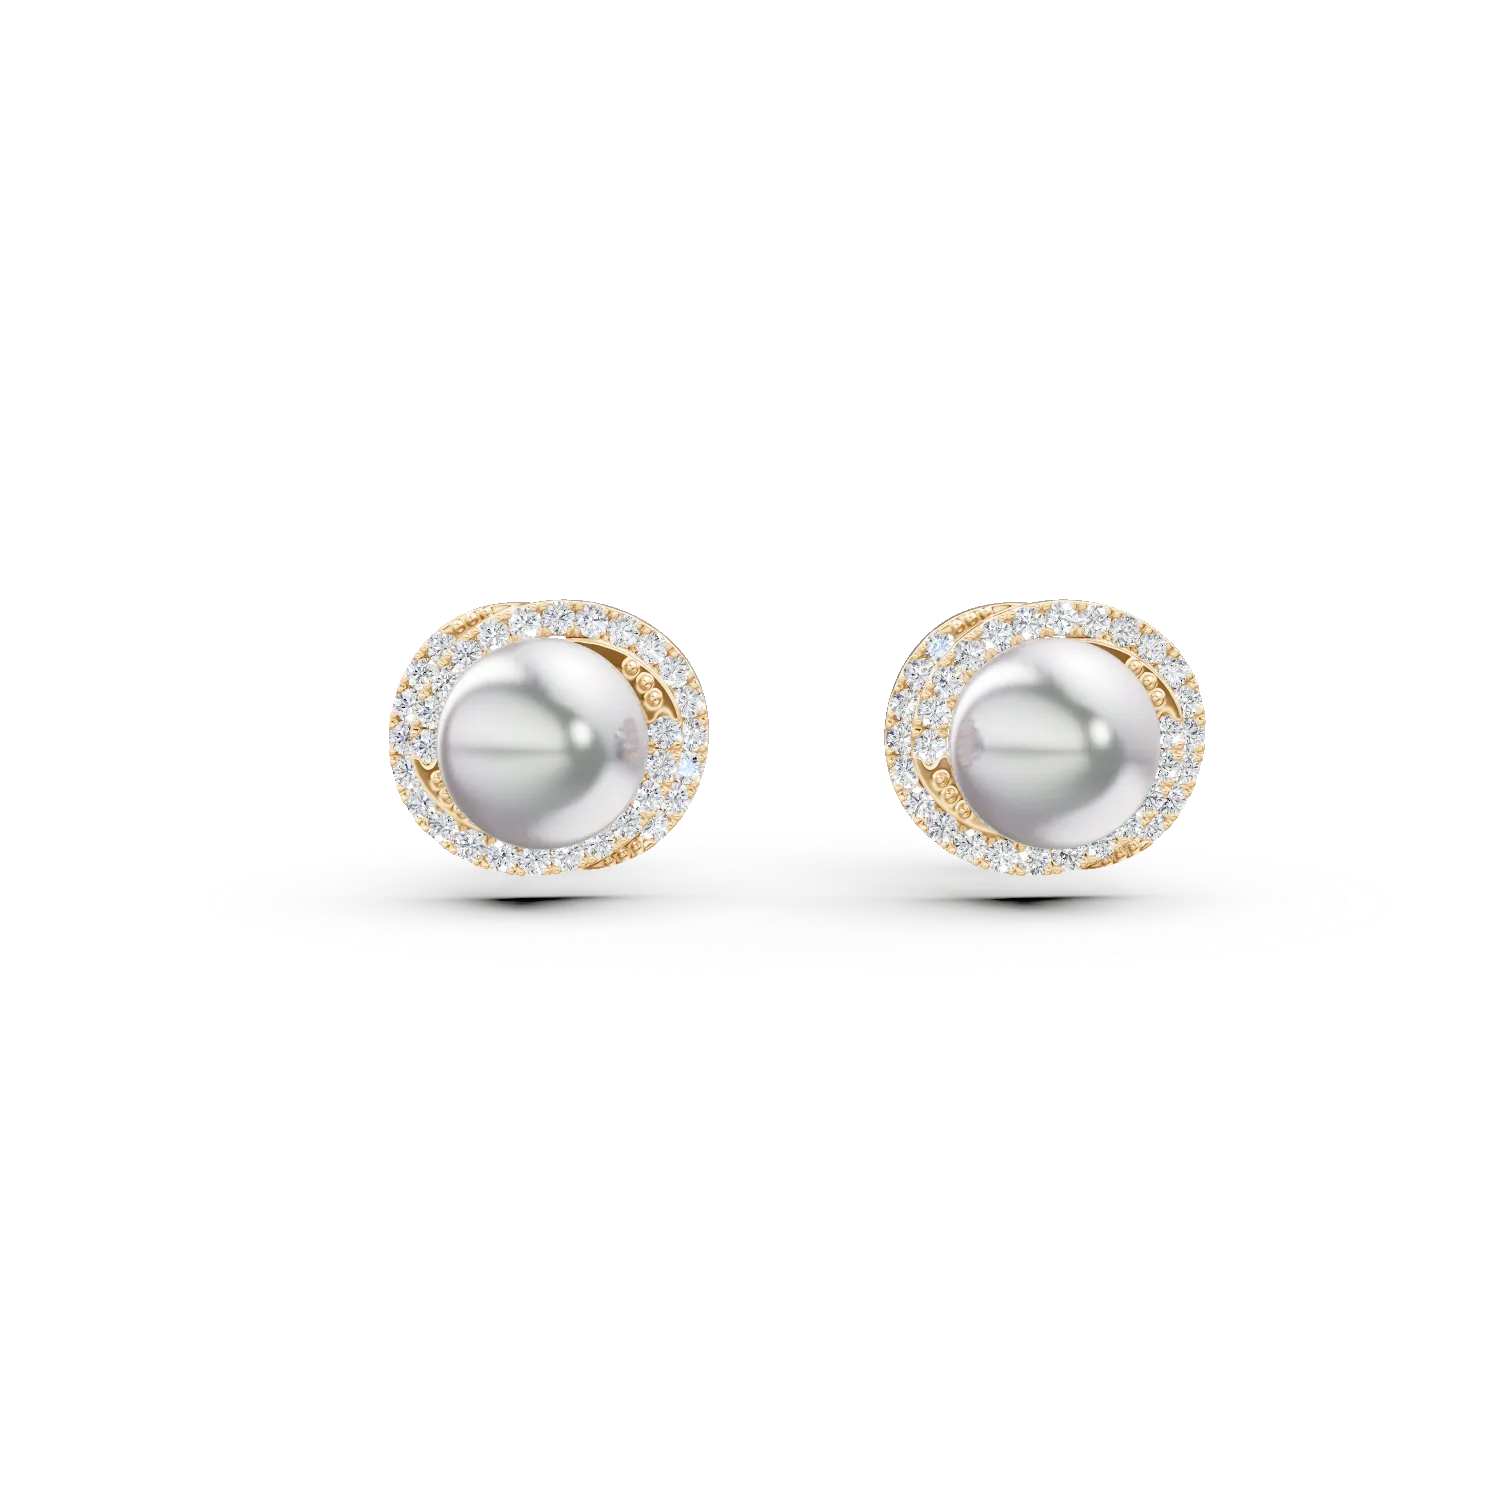 Cercei din argint galben cu perle sintetice si zirconii